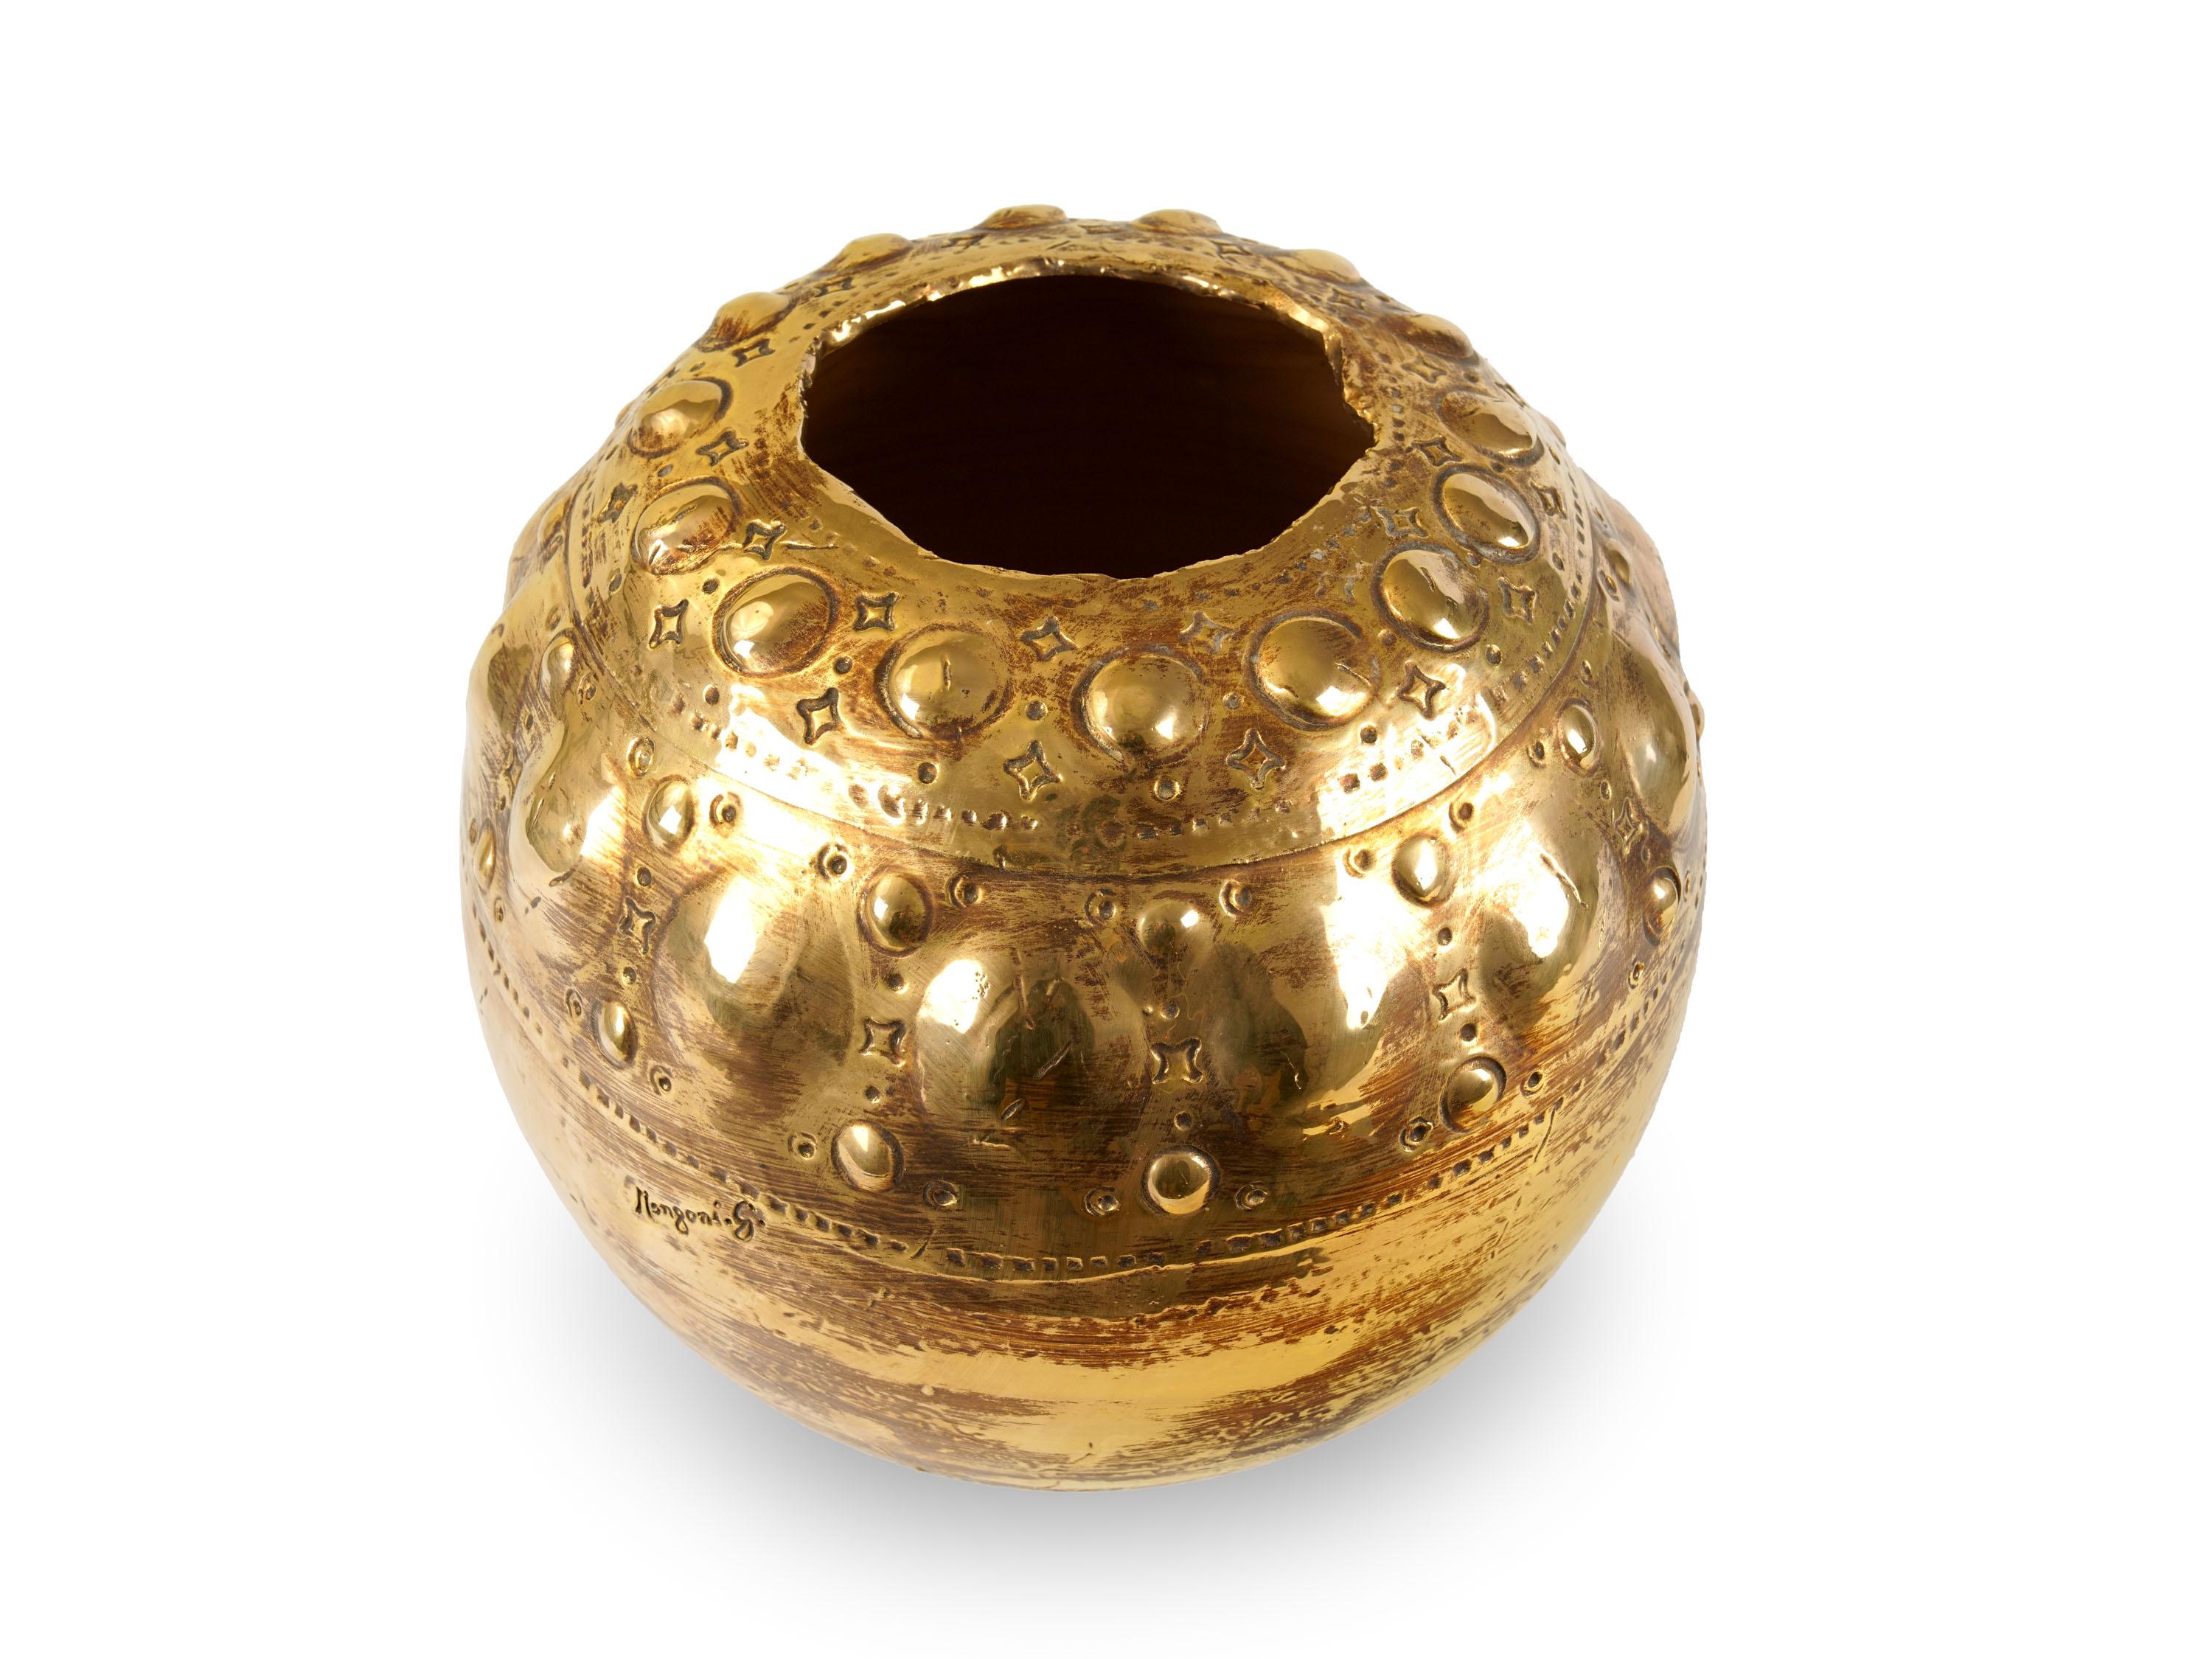 Skulpturale Vase, handgefertigt in Italien und verziert mit der Lustertechnik in 24 Kt Gold. Abmessungen: T 35 cm, H 40 cm. Der gesamte Herstellungsprozess wird in Italien von Hand durchgeführt.
Die Vase ist inspiriert von einem der